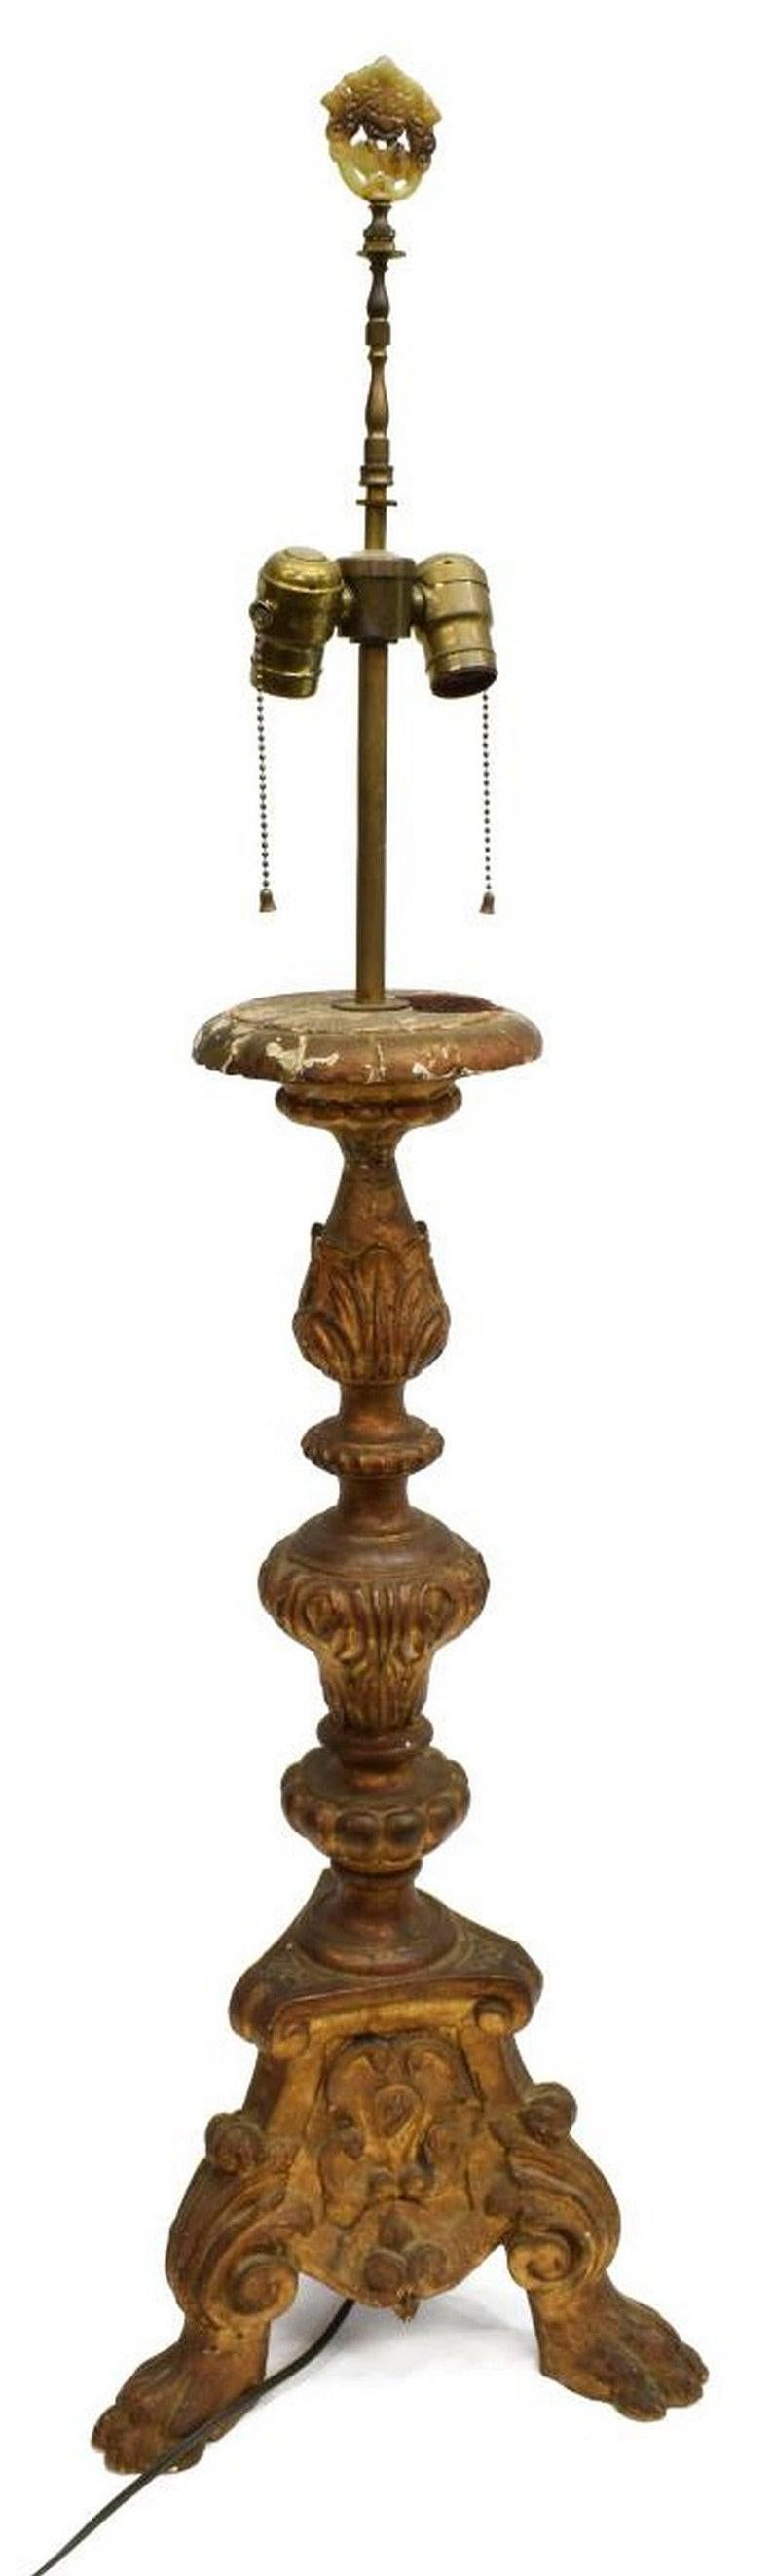 Superbe porte-bougie d'autel en bois baroque continental, bien sculpté, datant du 19e siècle, maintenant façonné comme une grande lampe de table à deux lumières, avec des bandes feuillagées, le standard avec une imagerie héraldique, s'élevant sur